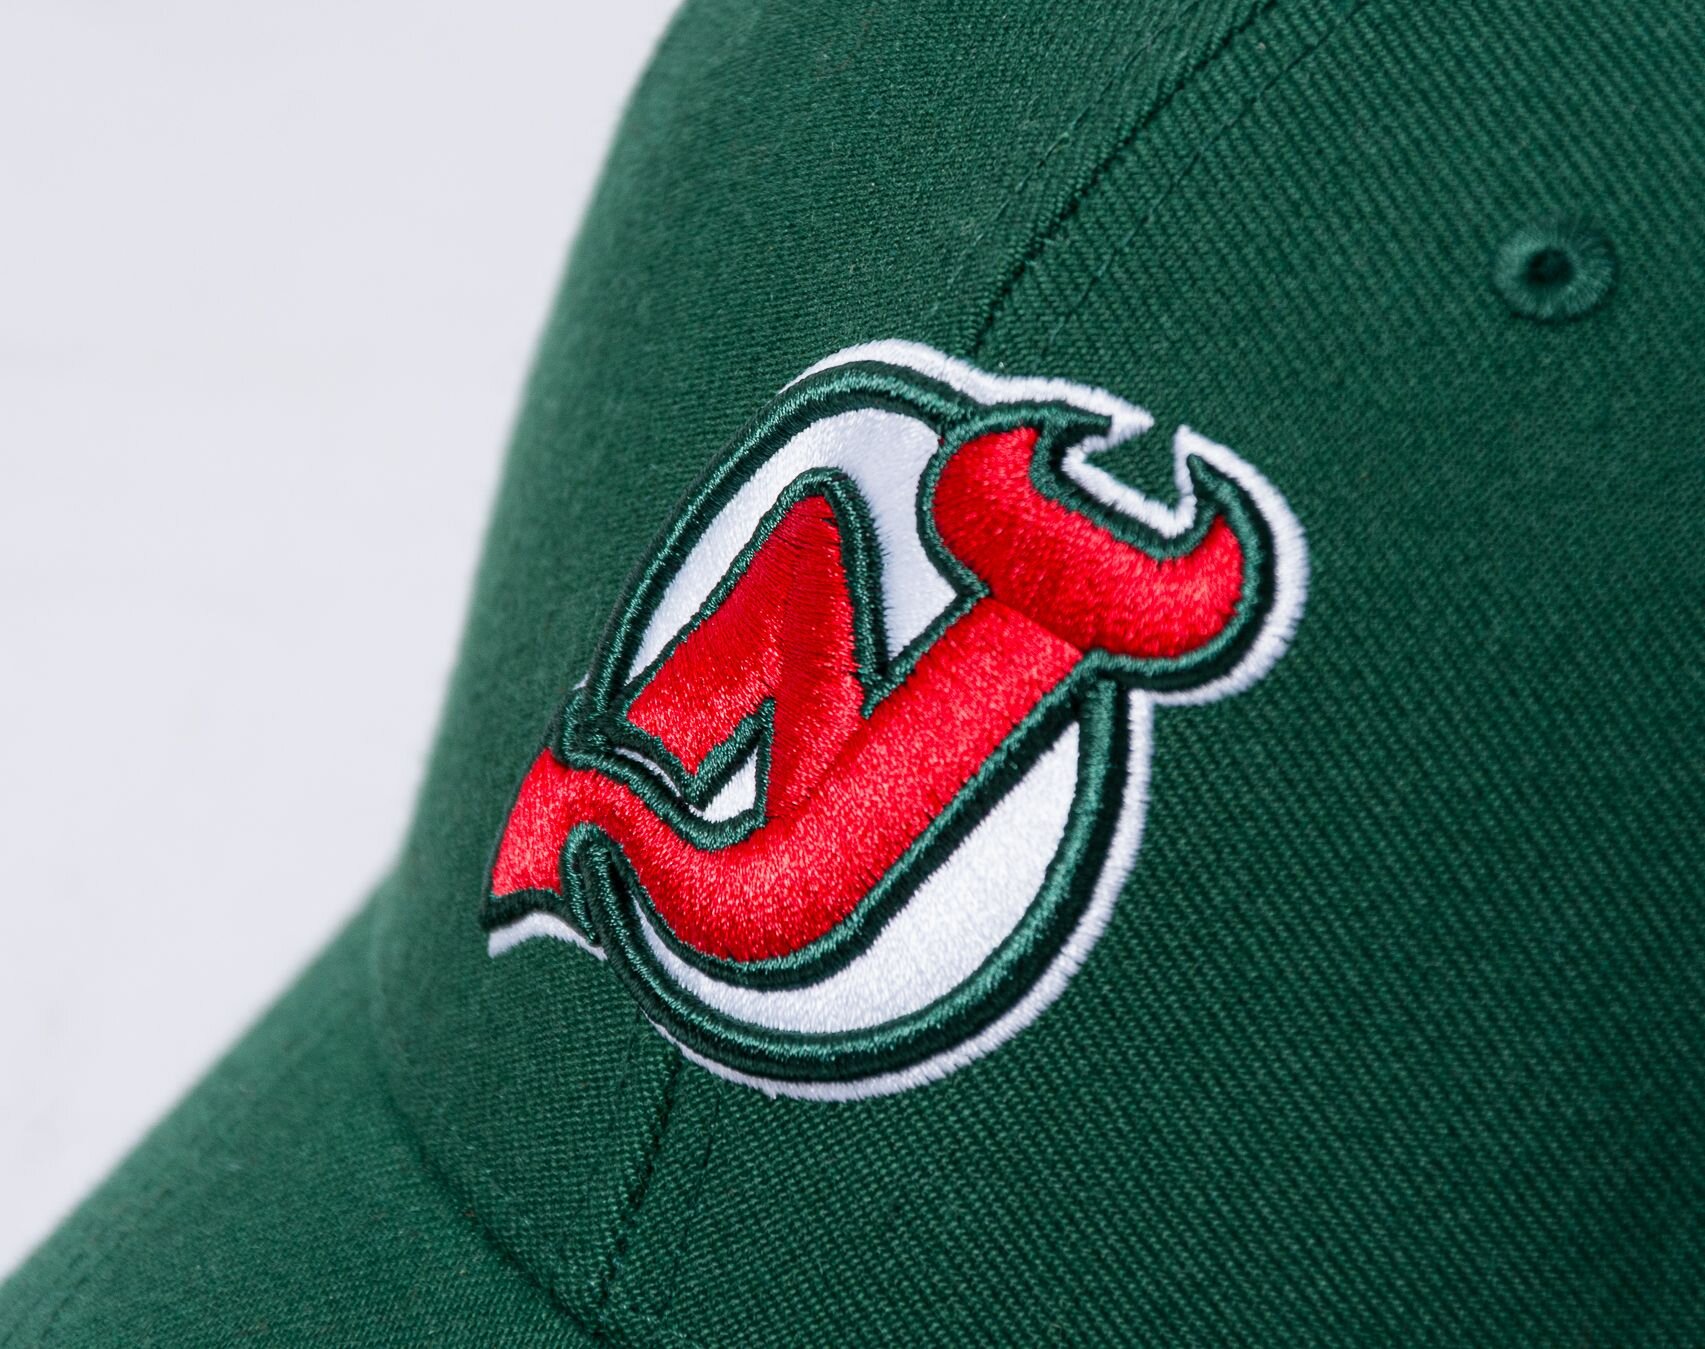 Buy NHL New Jersey Devils Vintage Sure Shot Snapback '47 MVP Cap for EUR  14.90 on !